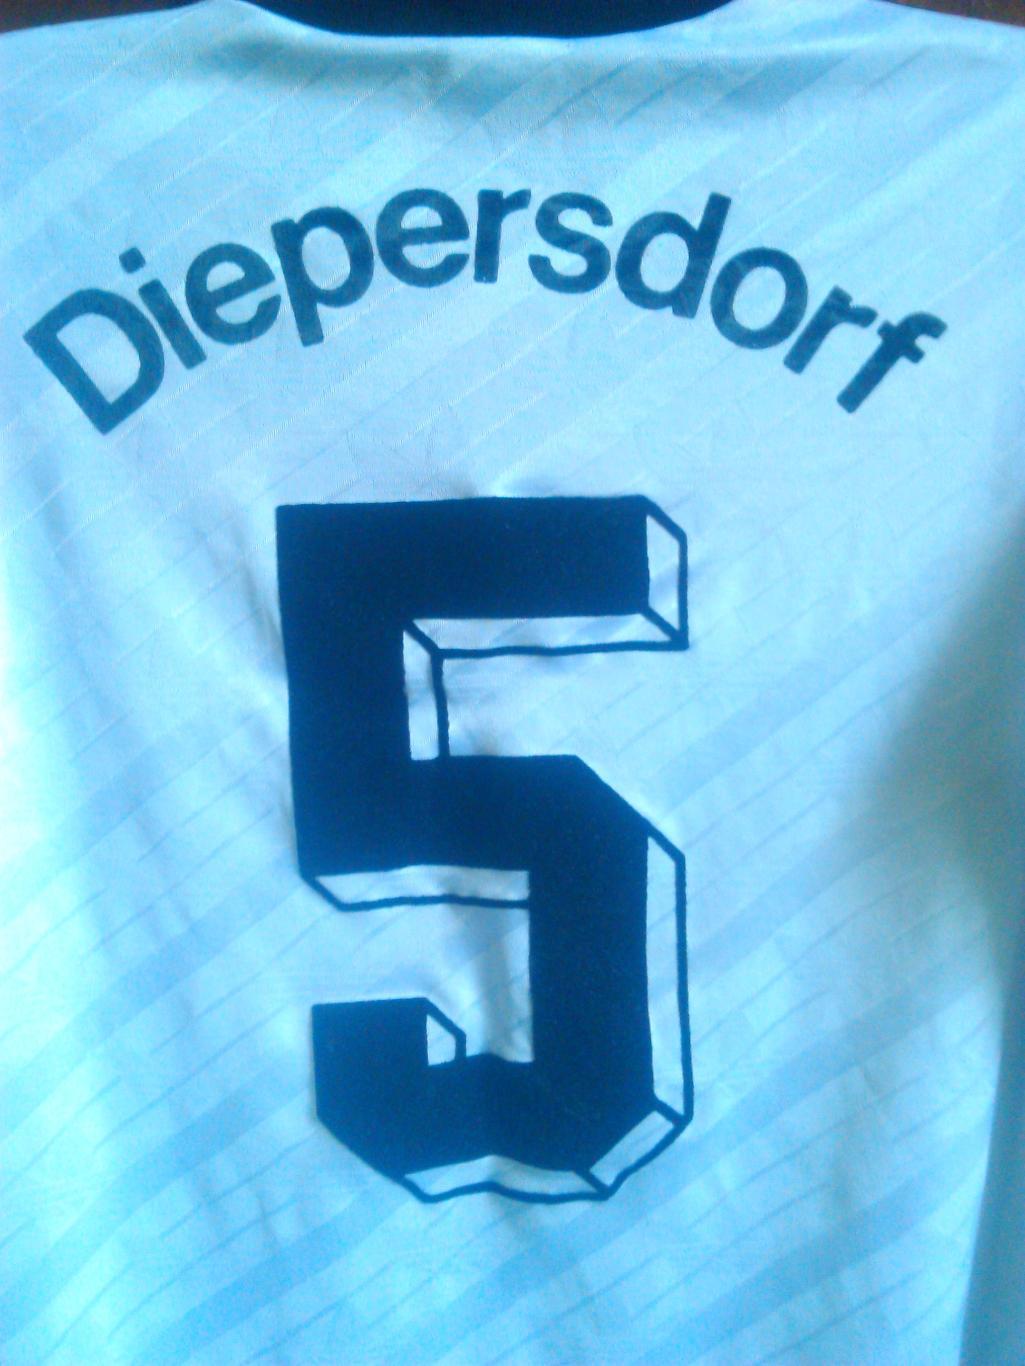 футболка сборной Германии №5 Diepelsdorf к Чемпионату Мира 1994! Фирма ADIDAS 1